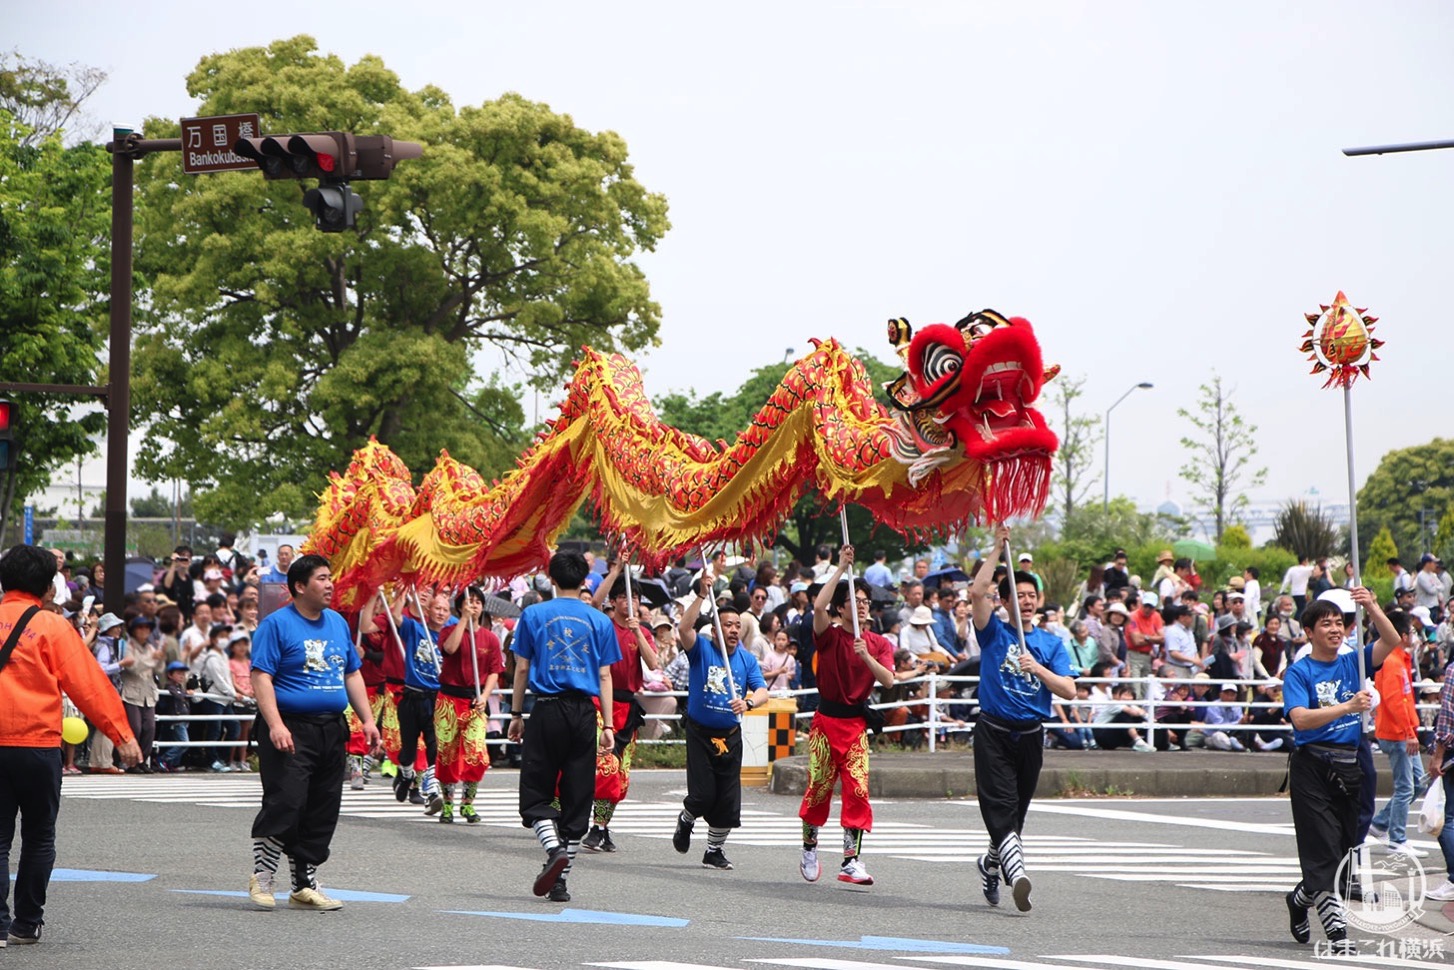 国際仮装行列「ザ よこはまパレード」龍舞